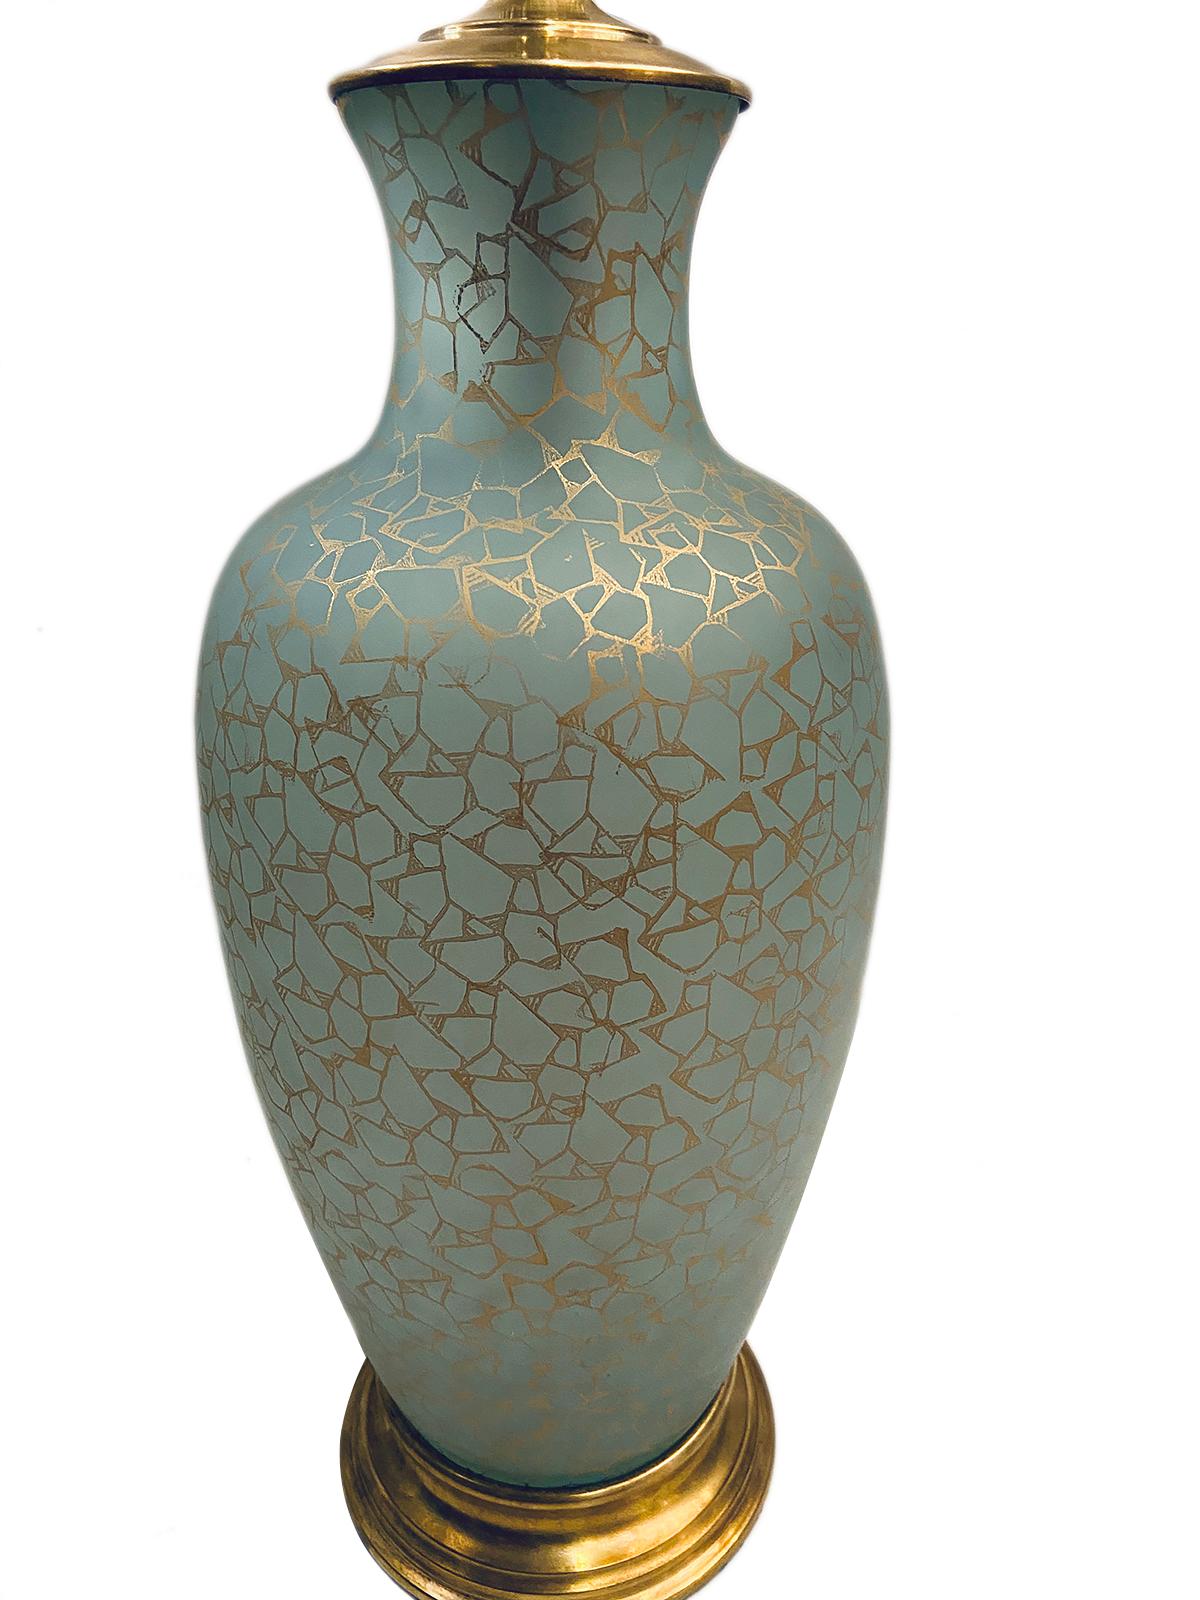 Paire de lampes de table en verre céladon avec motif doré, datant des années 1950.

Mesures :
Hauteur du corps : 17